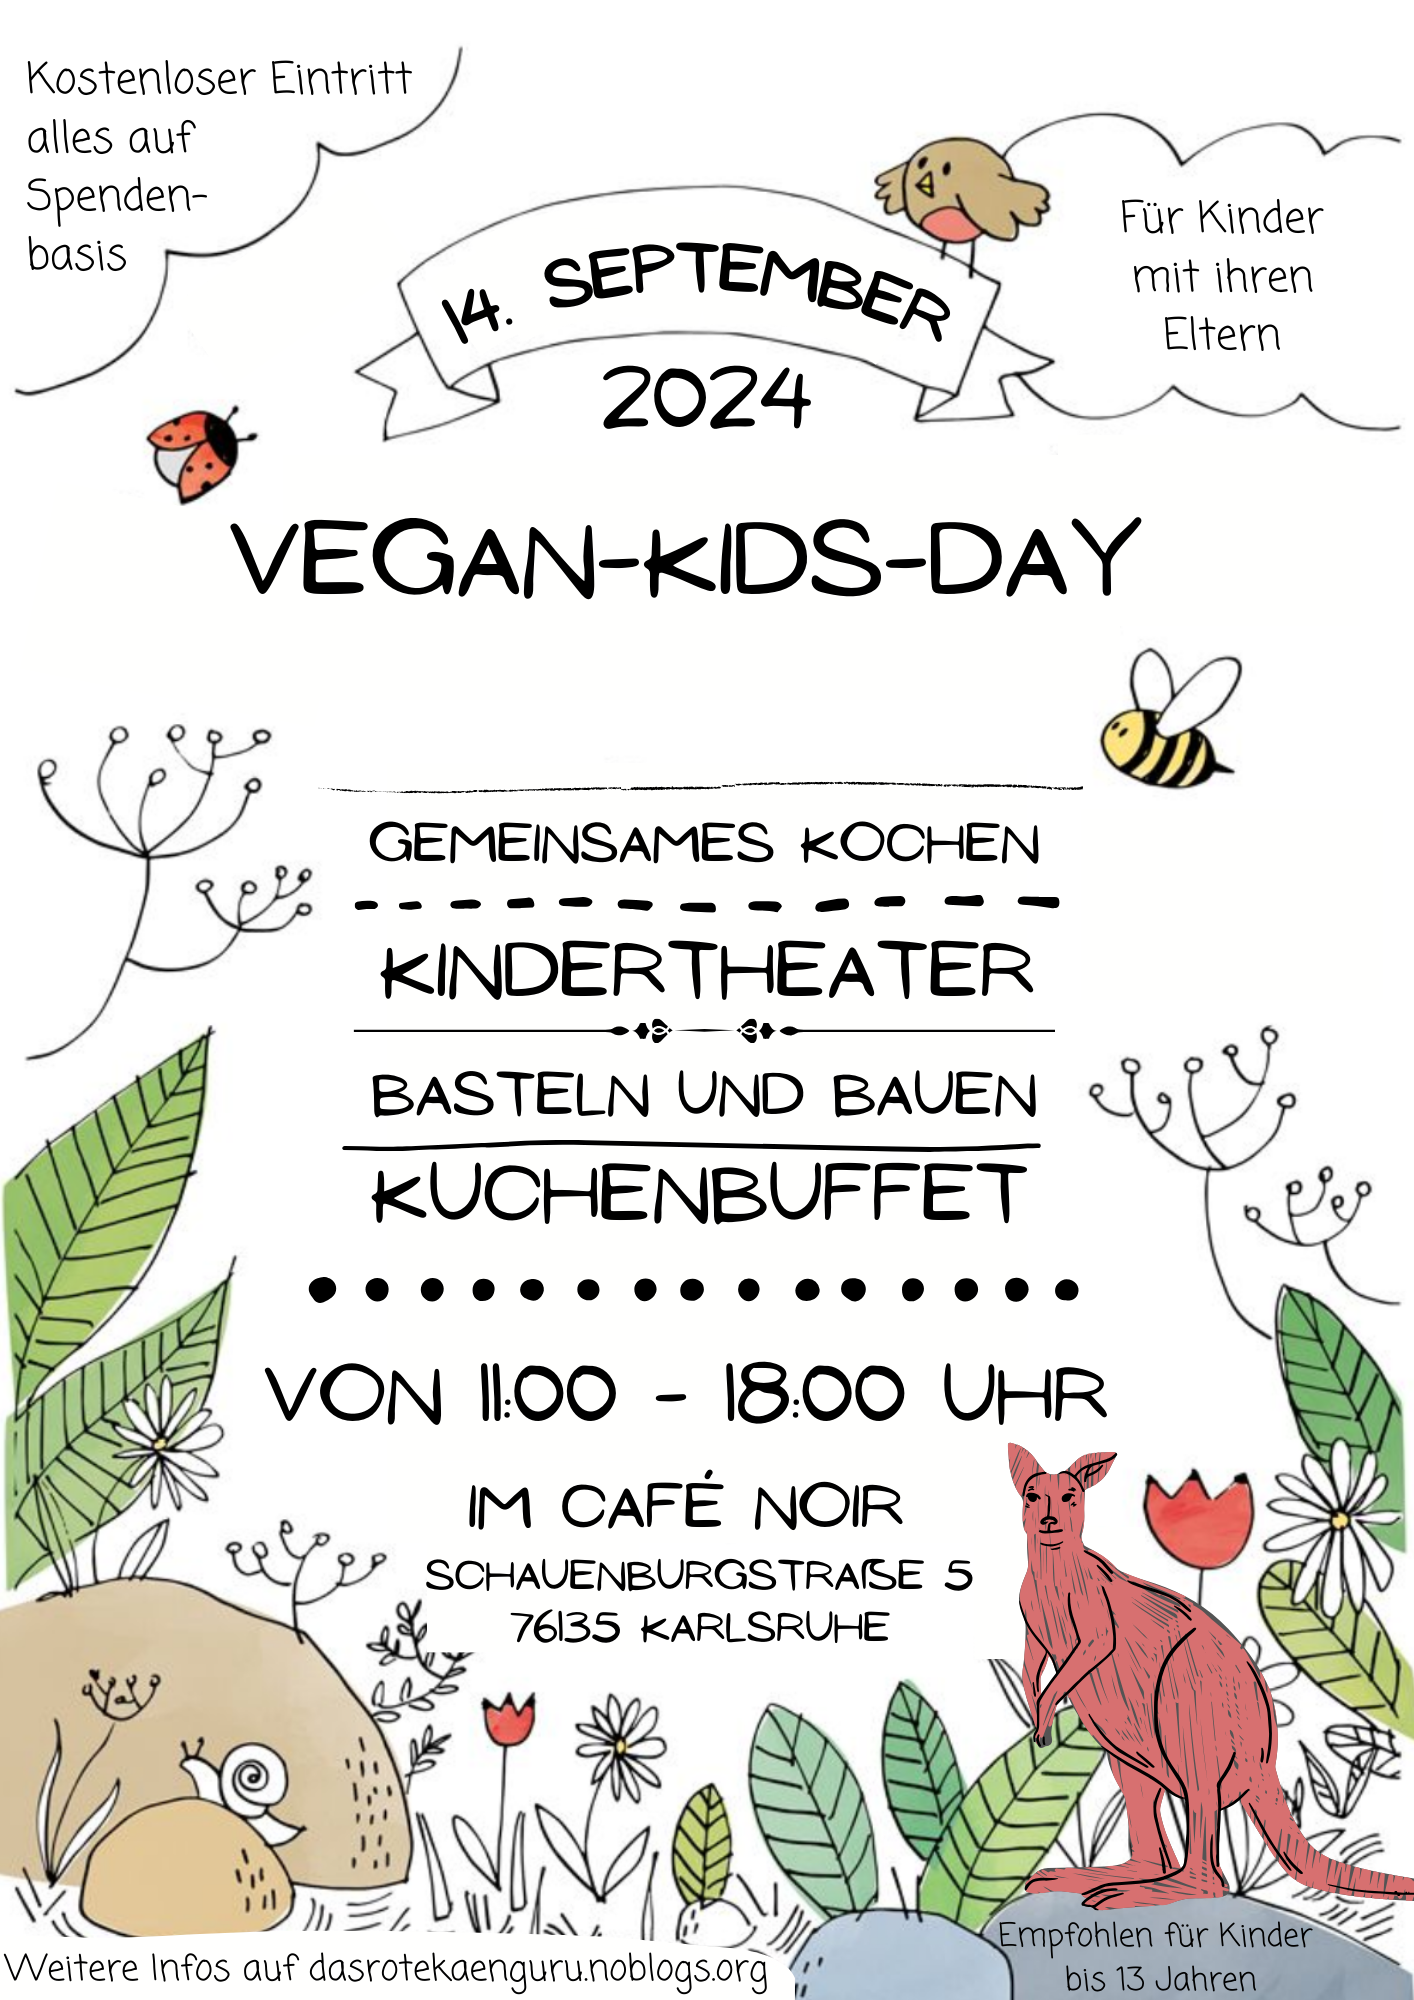 Vegan-Kids-Day 2024